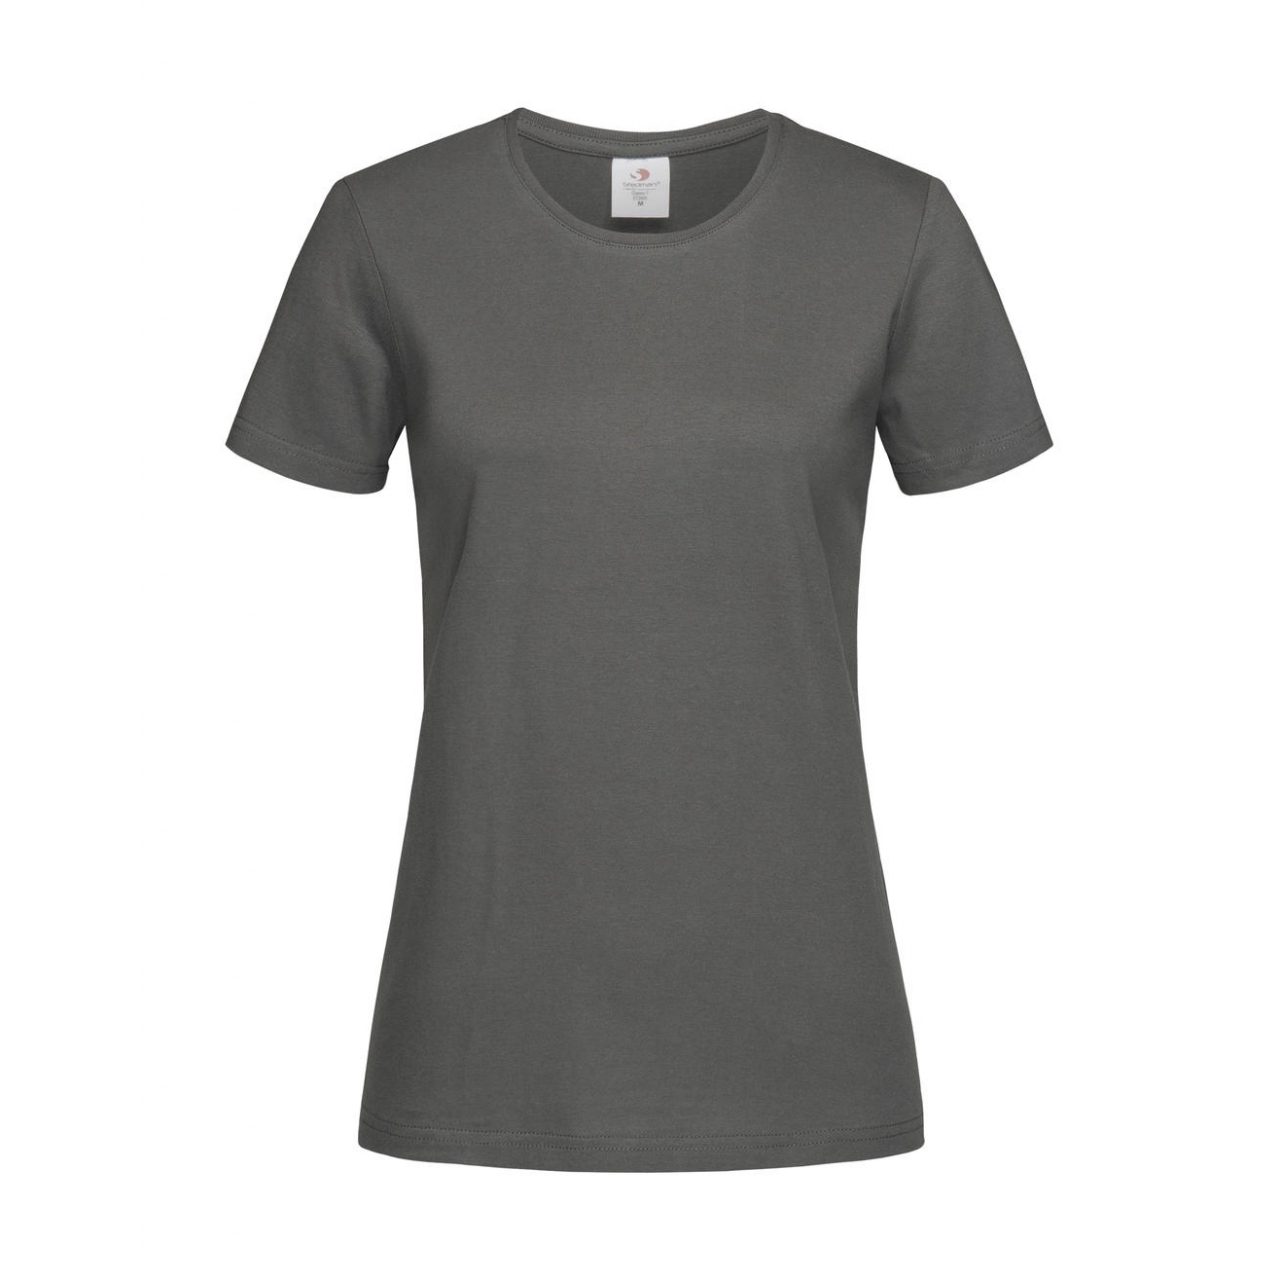 Tričko dámské Stedman Fitted s kulatým výstřihem - šedé, XL